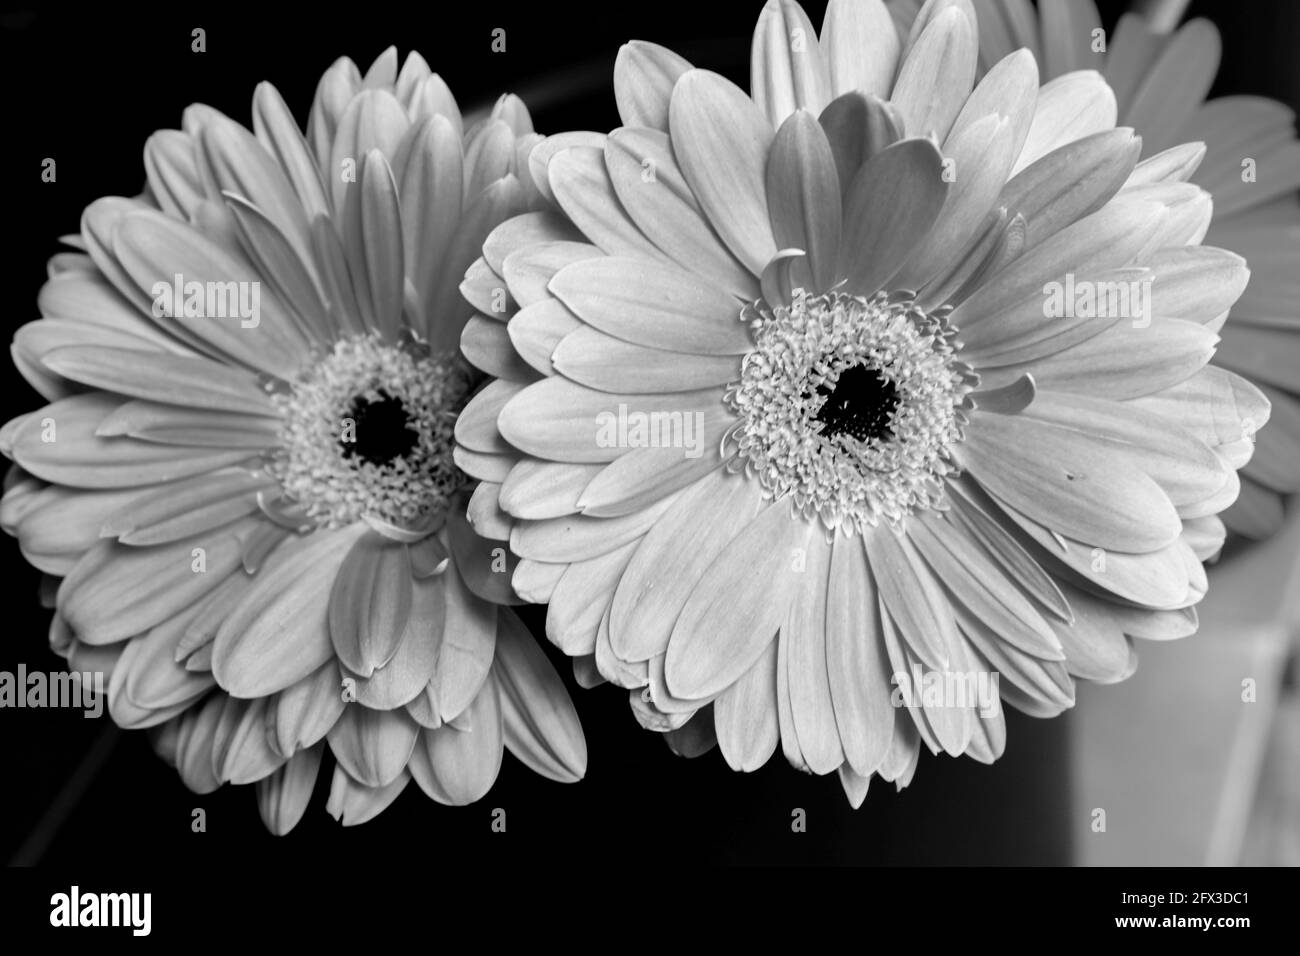 Imágenes artísticas en blanco y negro de Roses, Gerber Daisies, ramos y  racimos de Thistle en la ciudad de Nueva York, jueves, 9 de mayo de 2019.  Foto de Jennifer Graylock-Graylock.com 917-519-7666